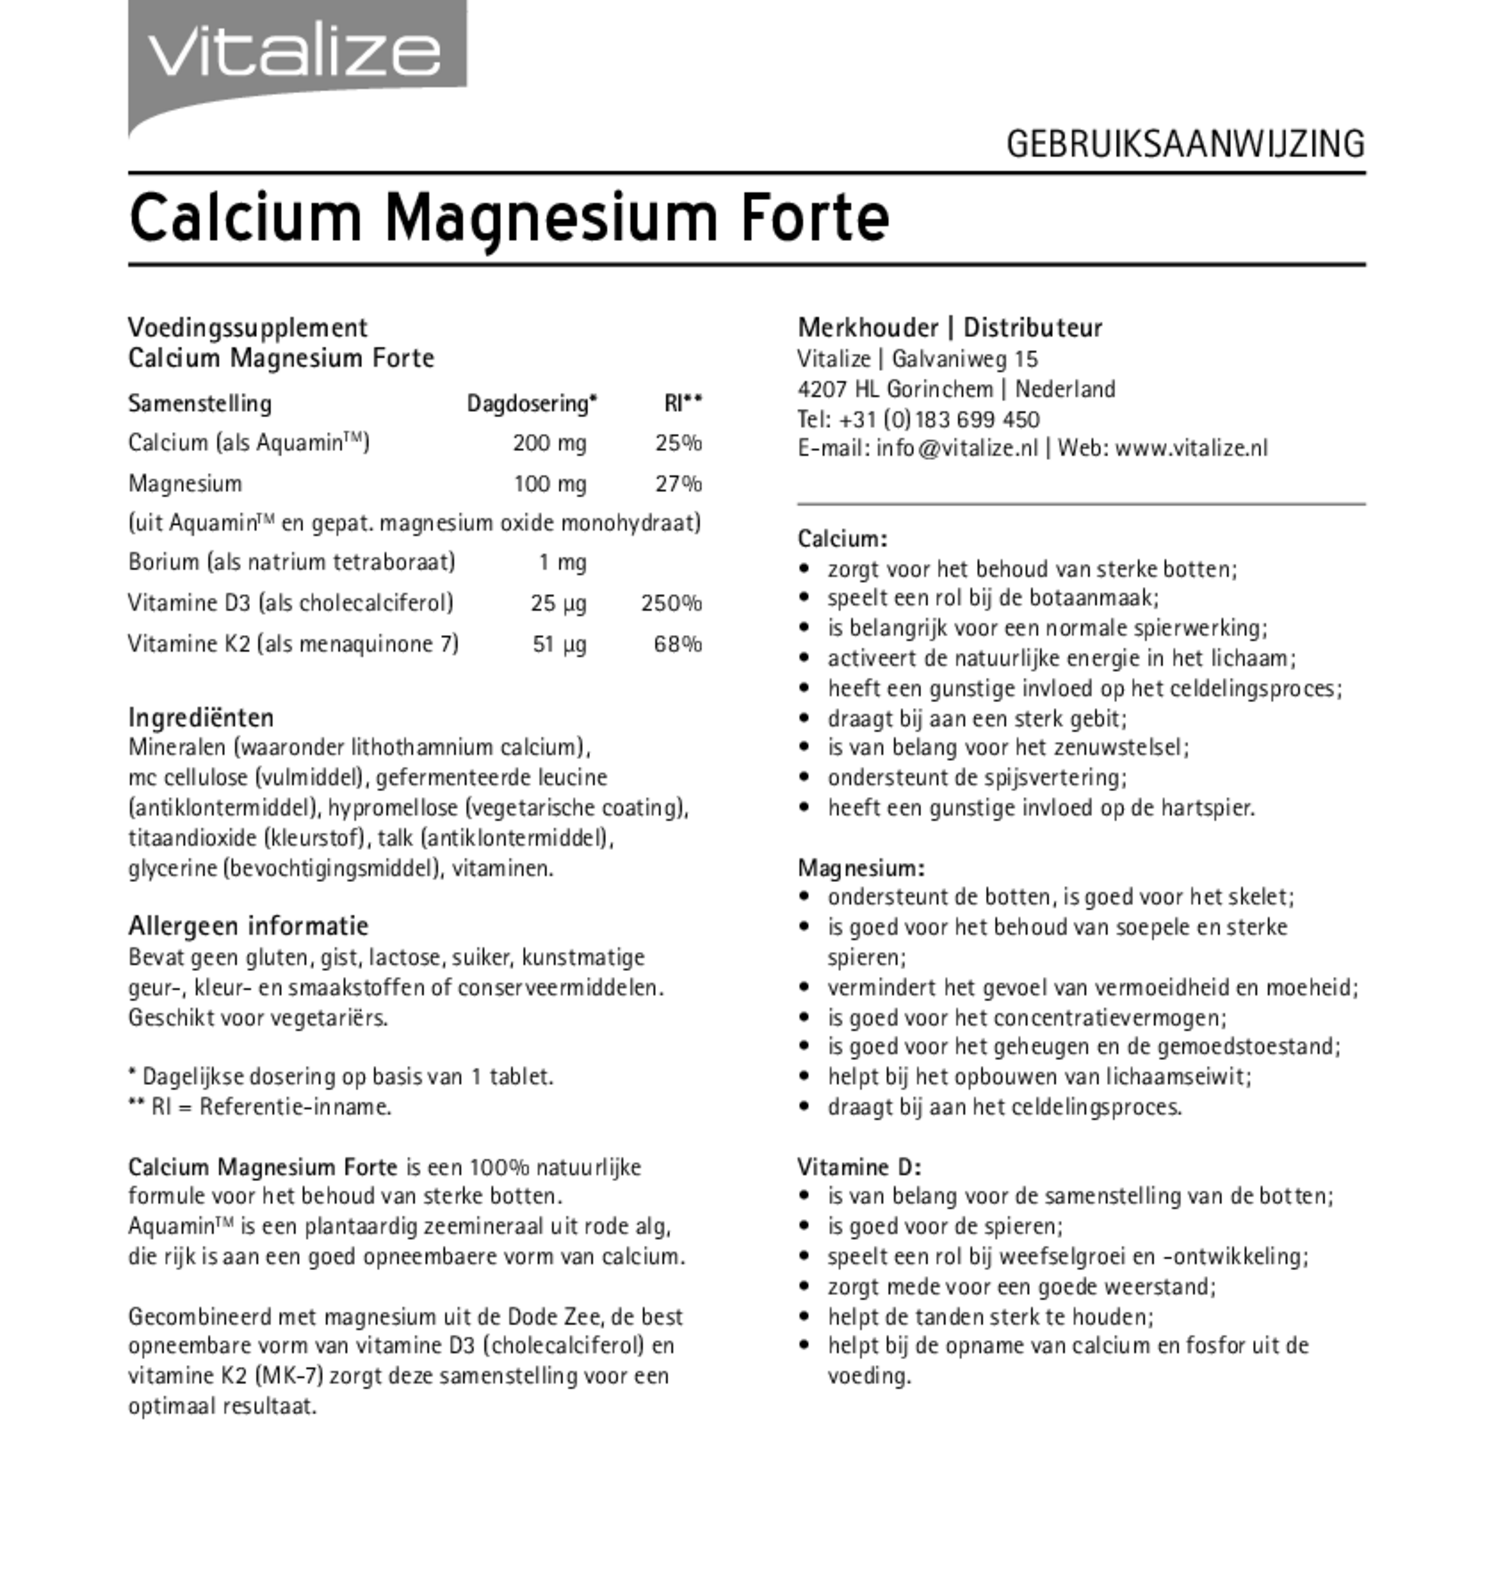 Calcium Magnesium Forte Tabletten Voordeelverpakking afbeelding van document #1, gebruiksaanwijzing